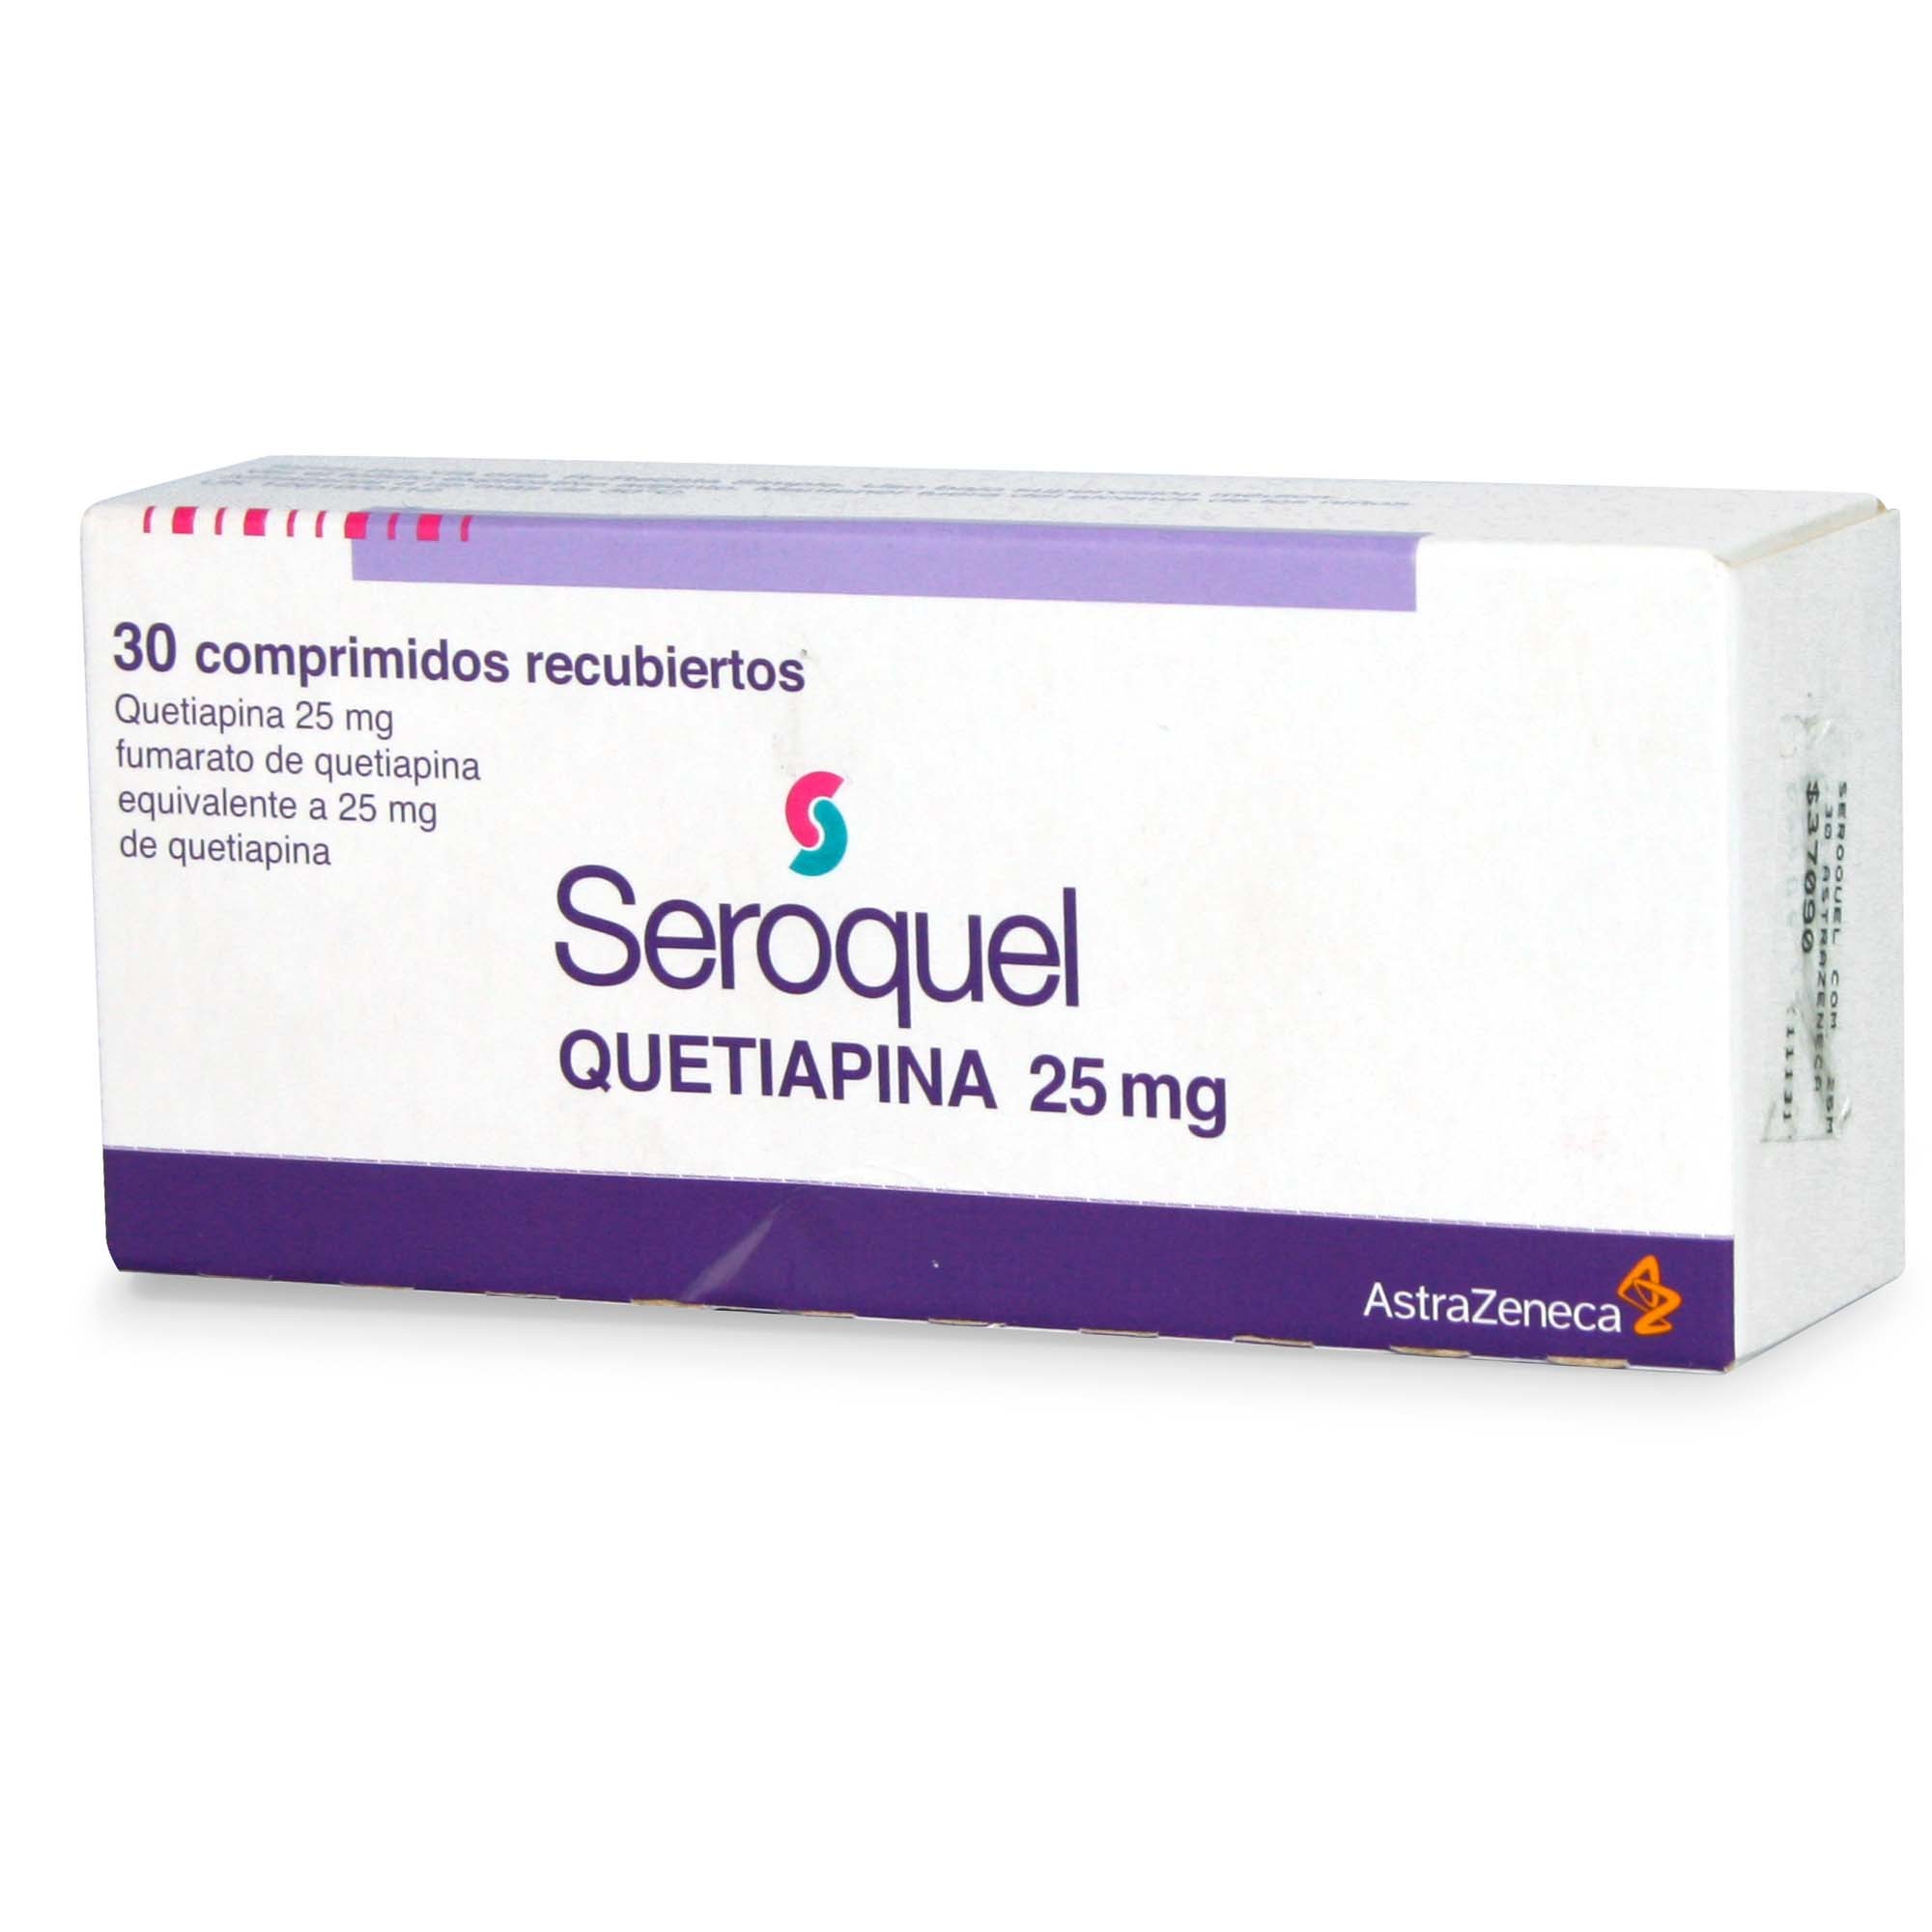 Seroquel Quetiapina 25 Mg 30 Comprimidos Recubierto Los Expertos En Ahorro Cruz Verde Colombia